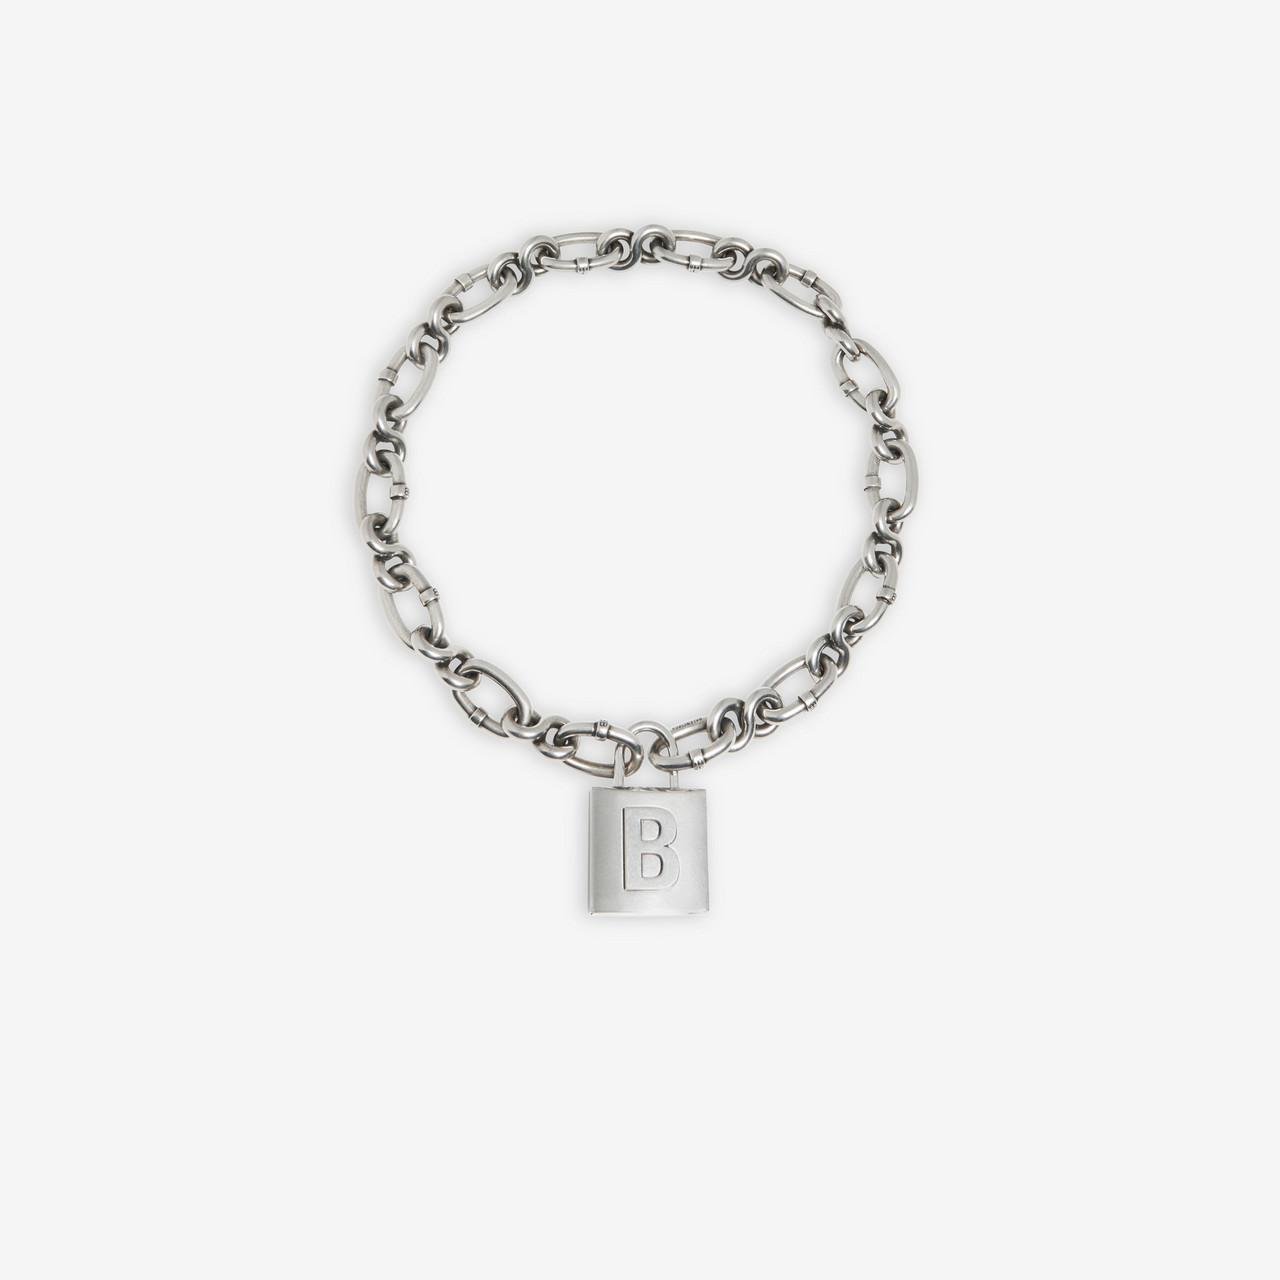 Silver Chain necklace with pendant Balenciaga  Vitkac TW